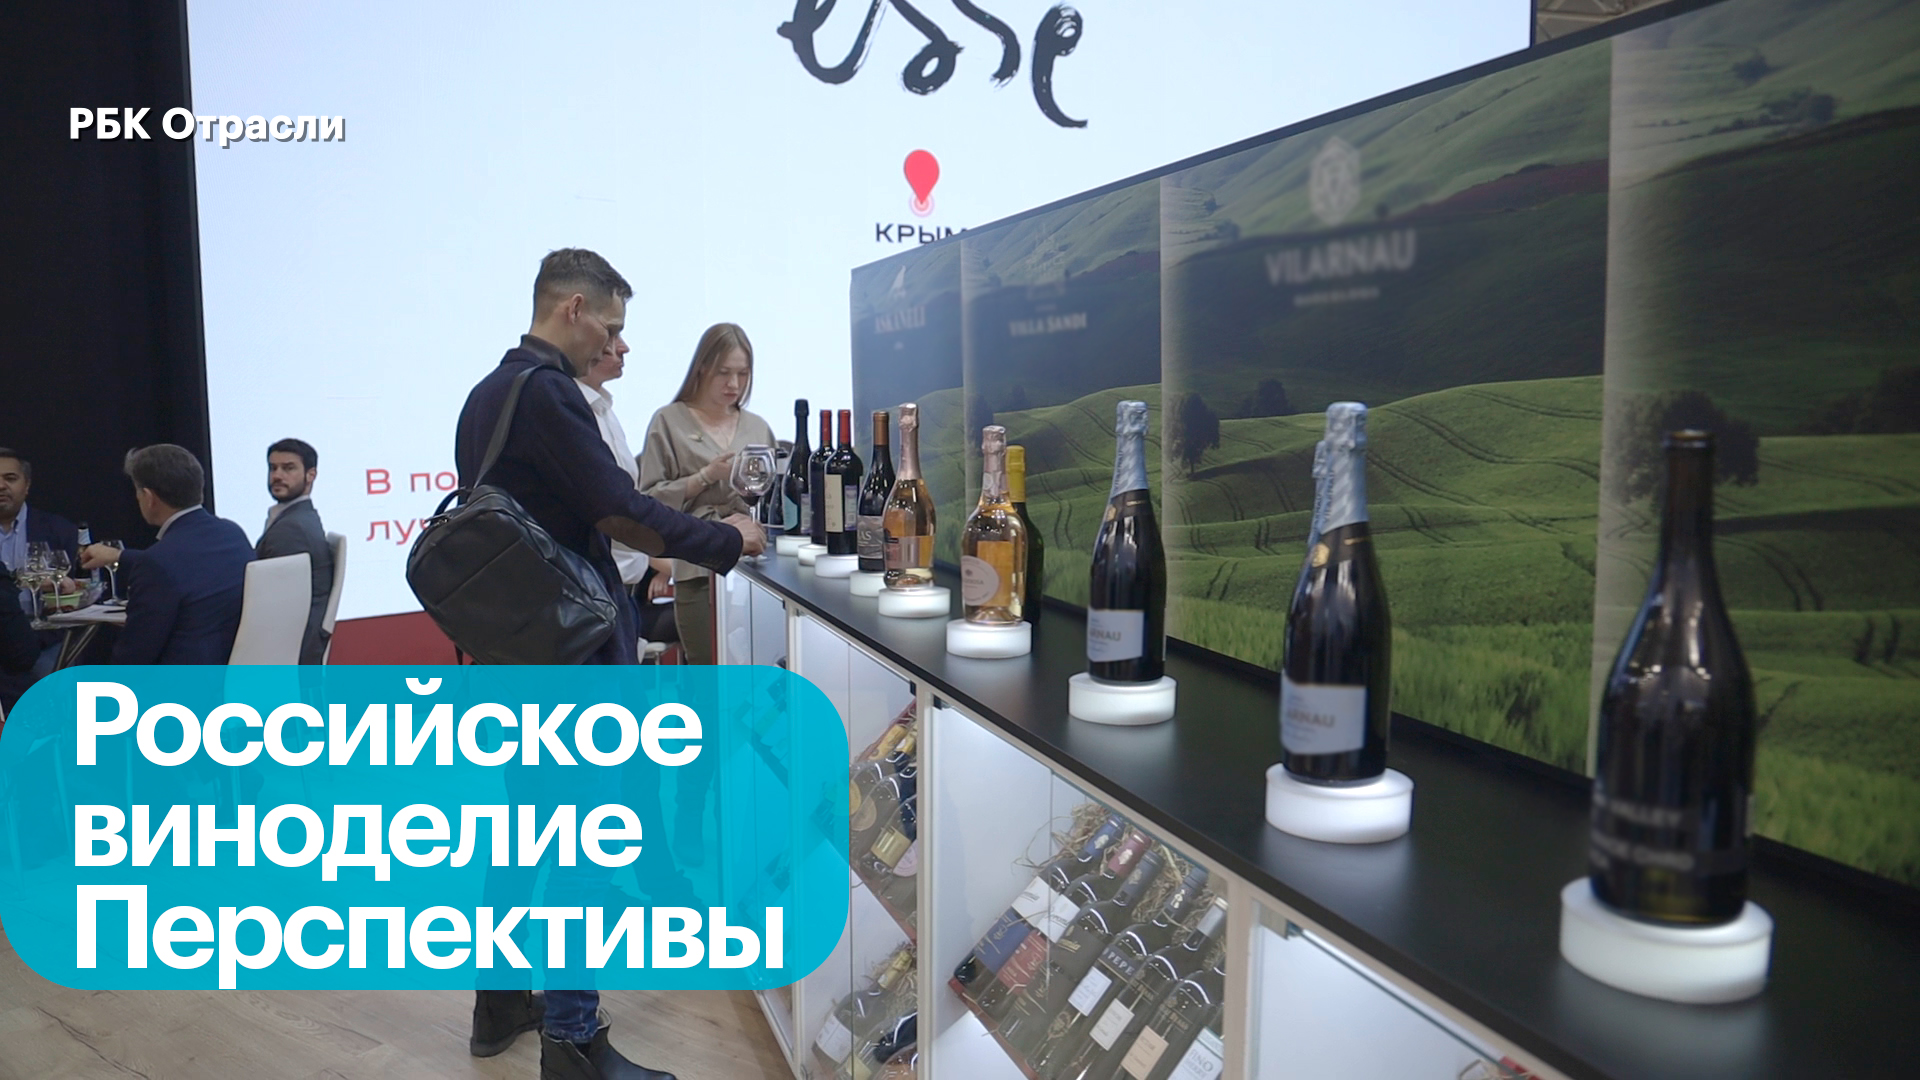 Российский рынок алкоголя: спрос, тренды и перспективы